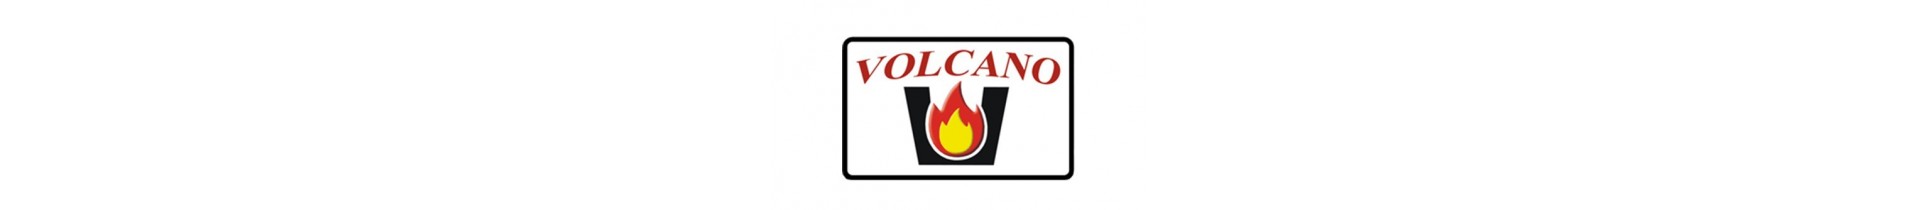 Ενεργειακά τζάκια Volcano